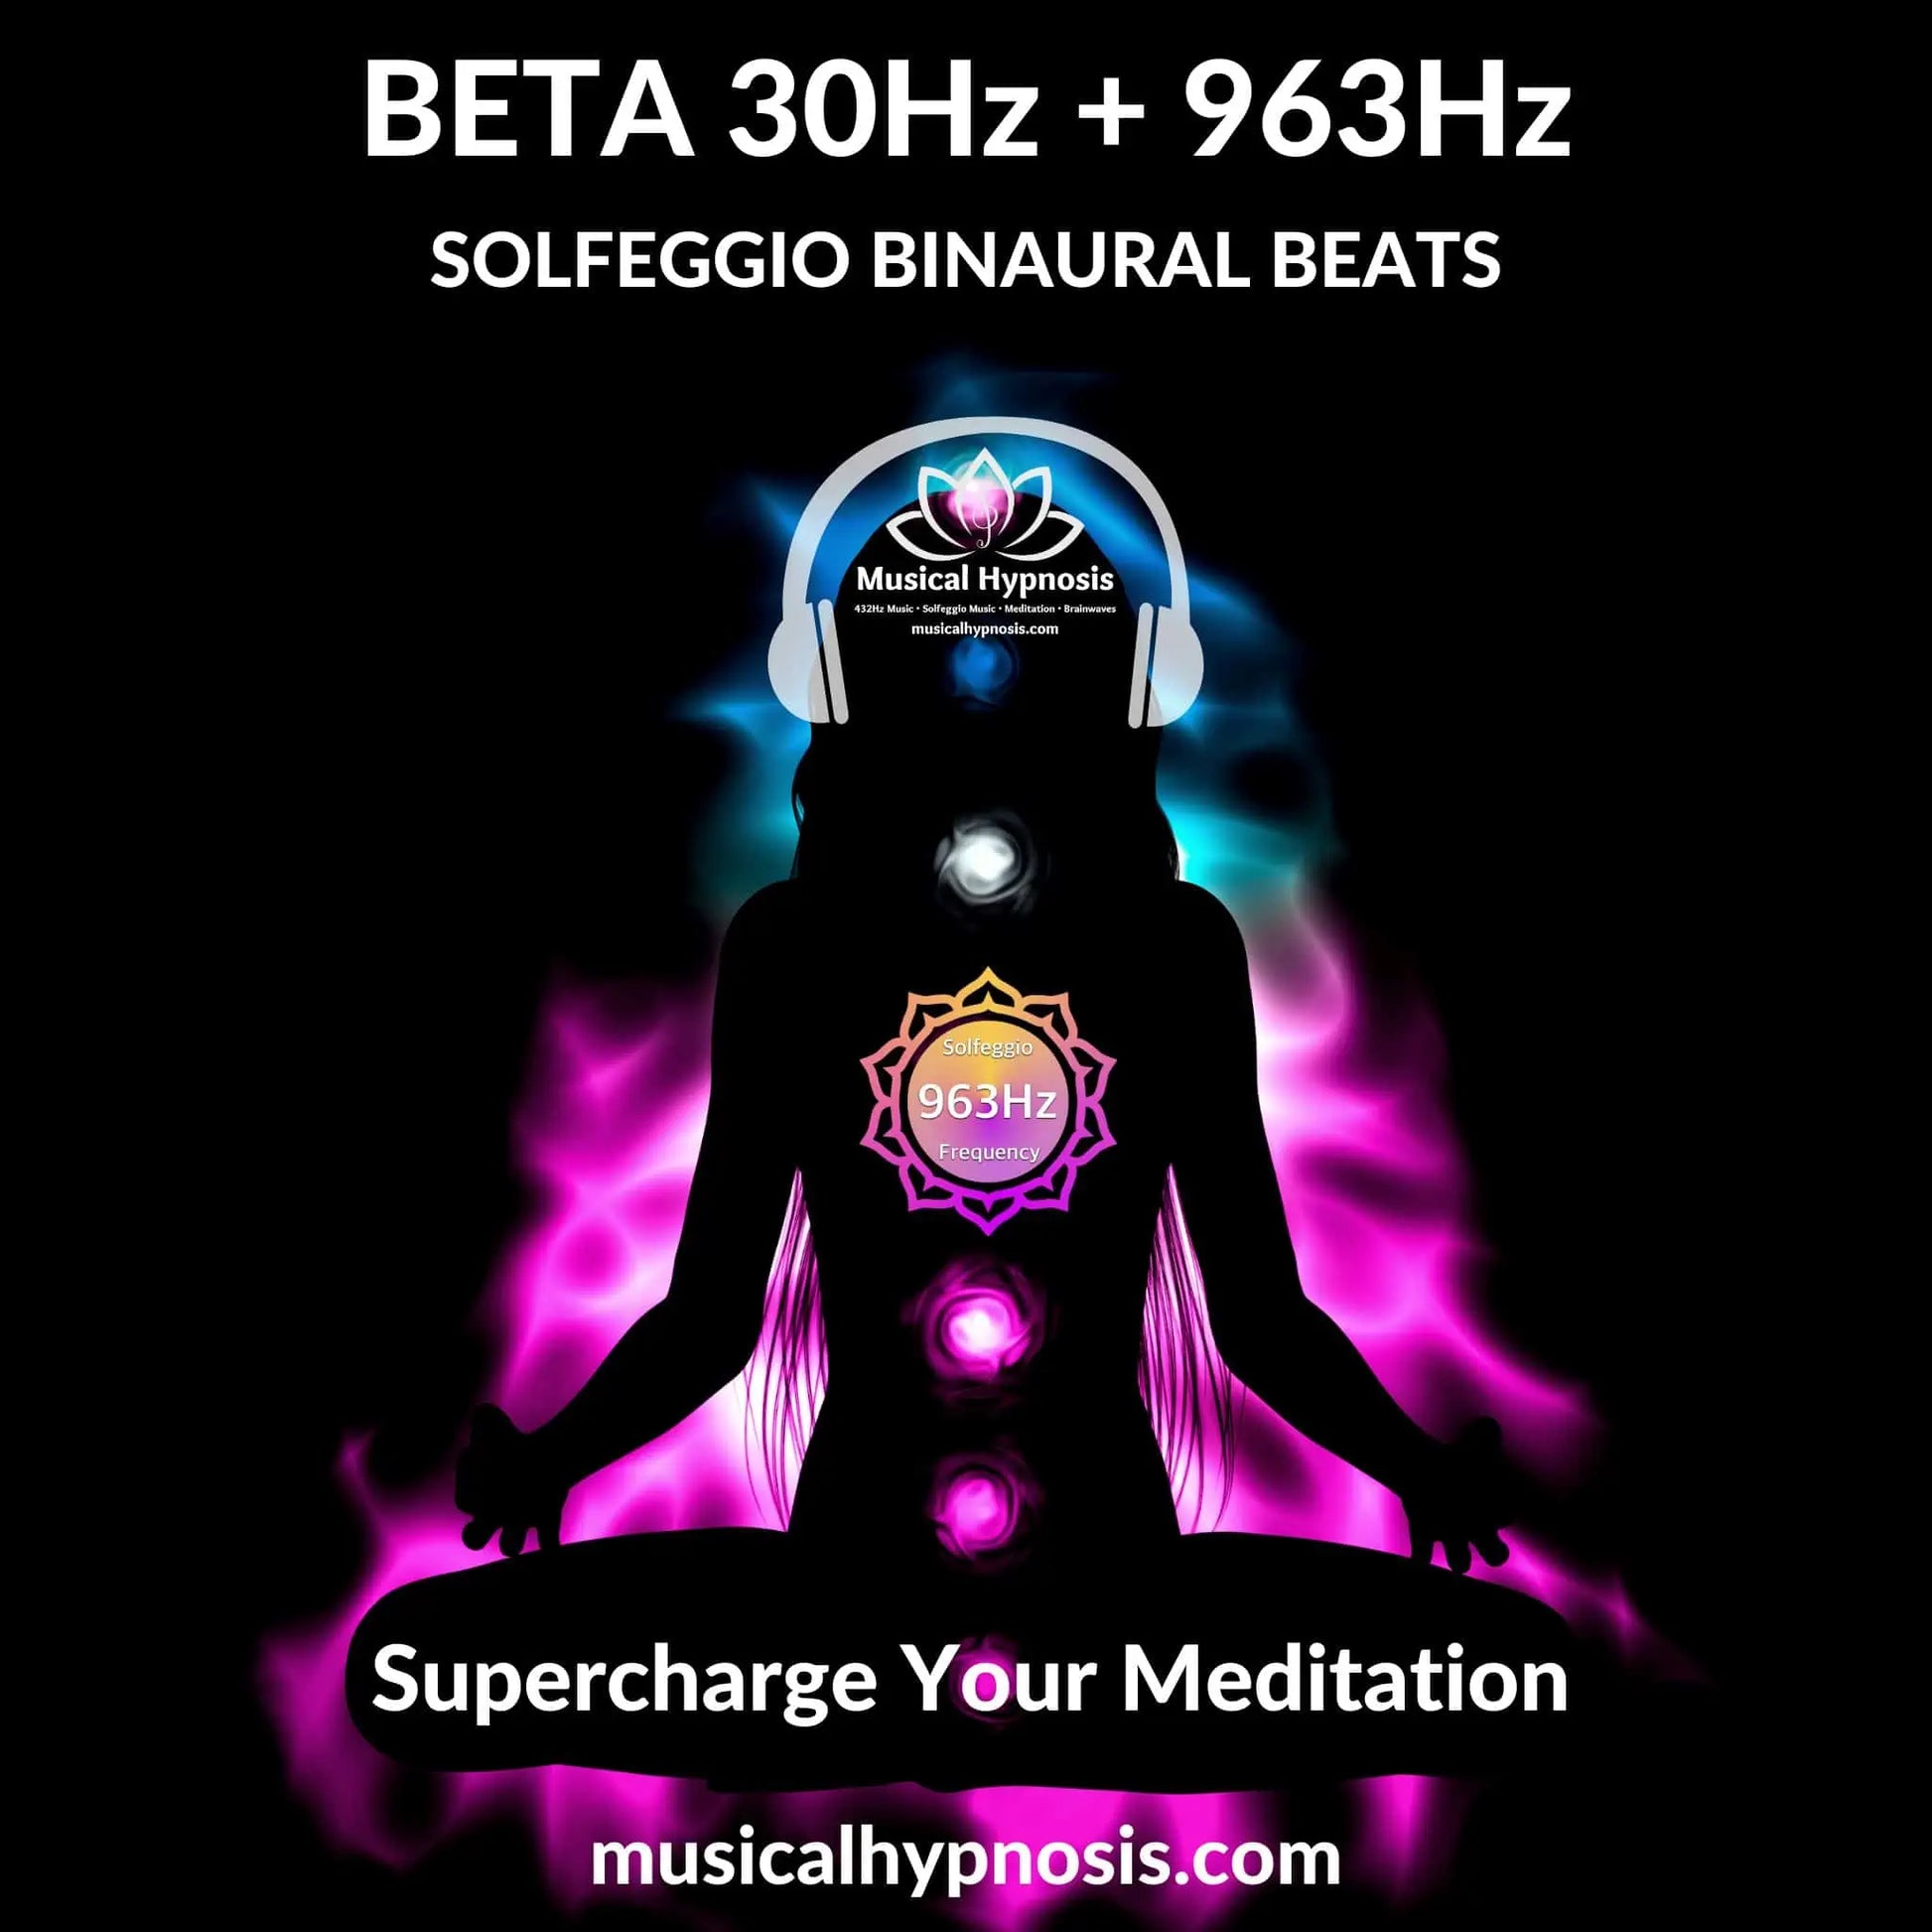 Beta 30Hz and 963Hz Solfeggio Binaural Beats | 30 minutes